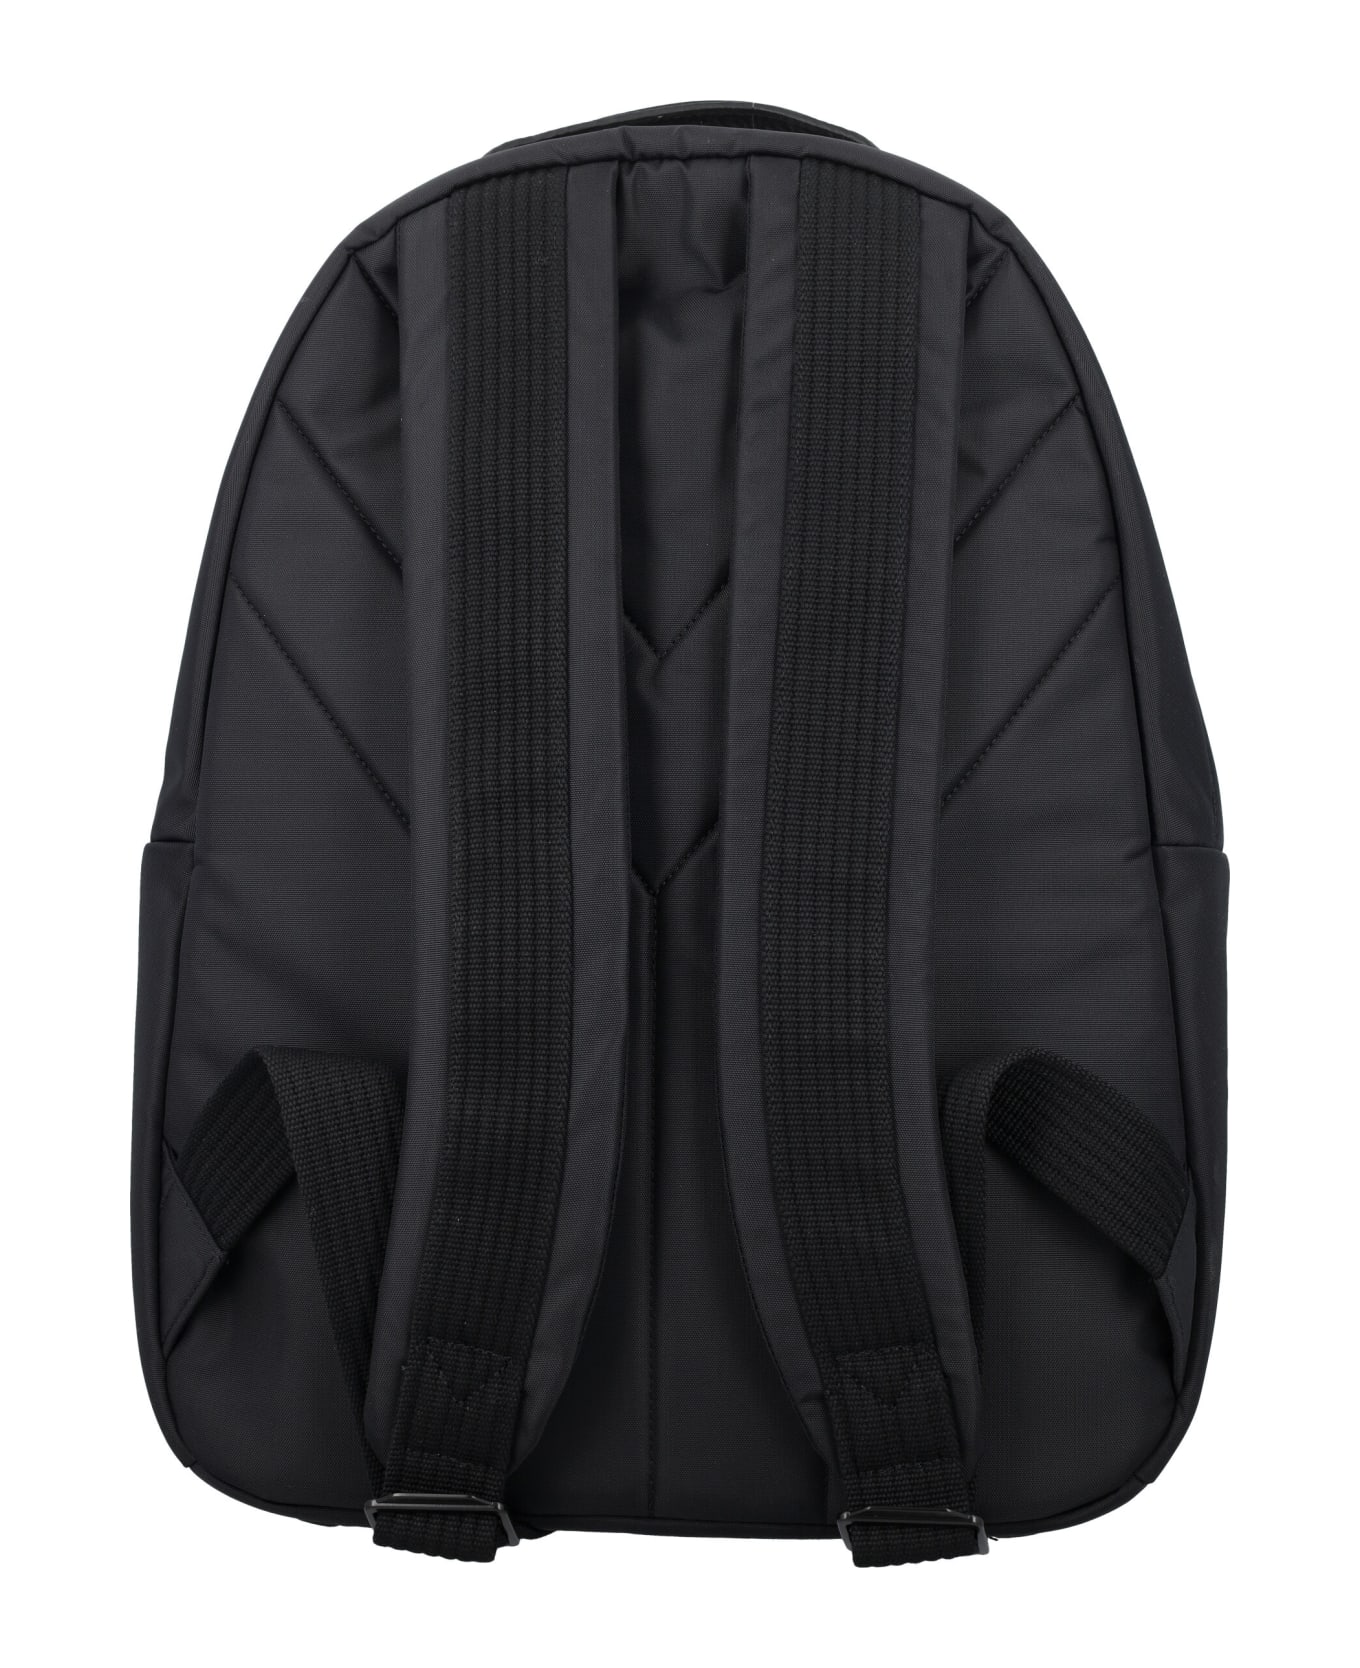 Y-3 Lux Backpack - BLACK